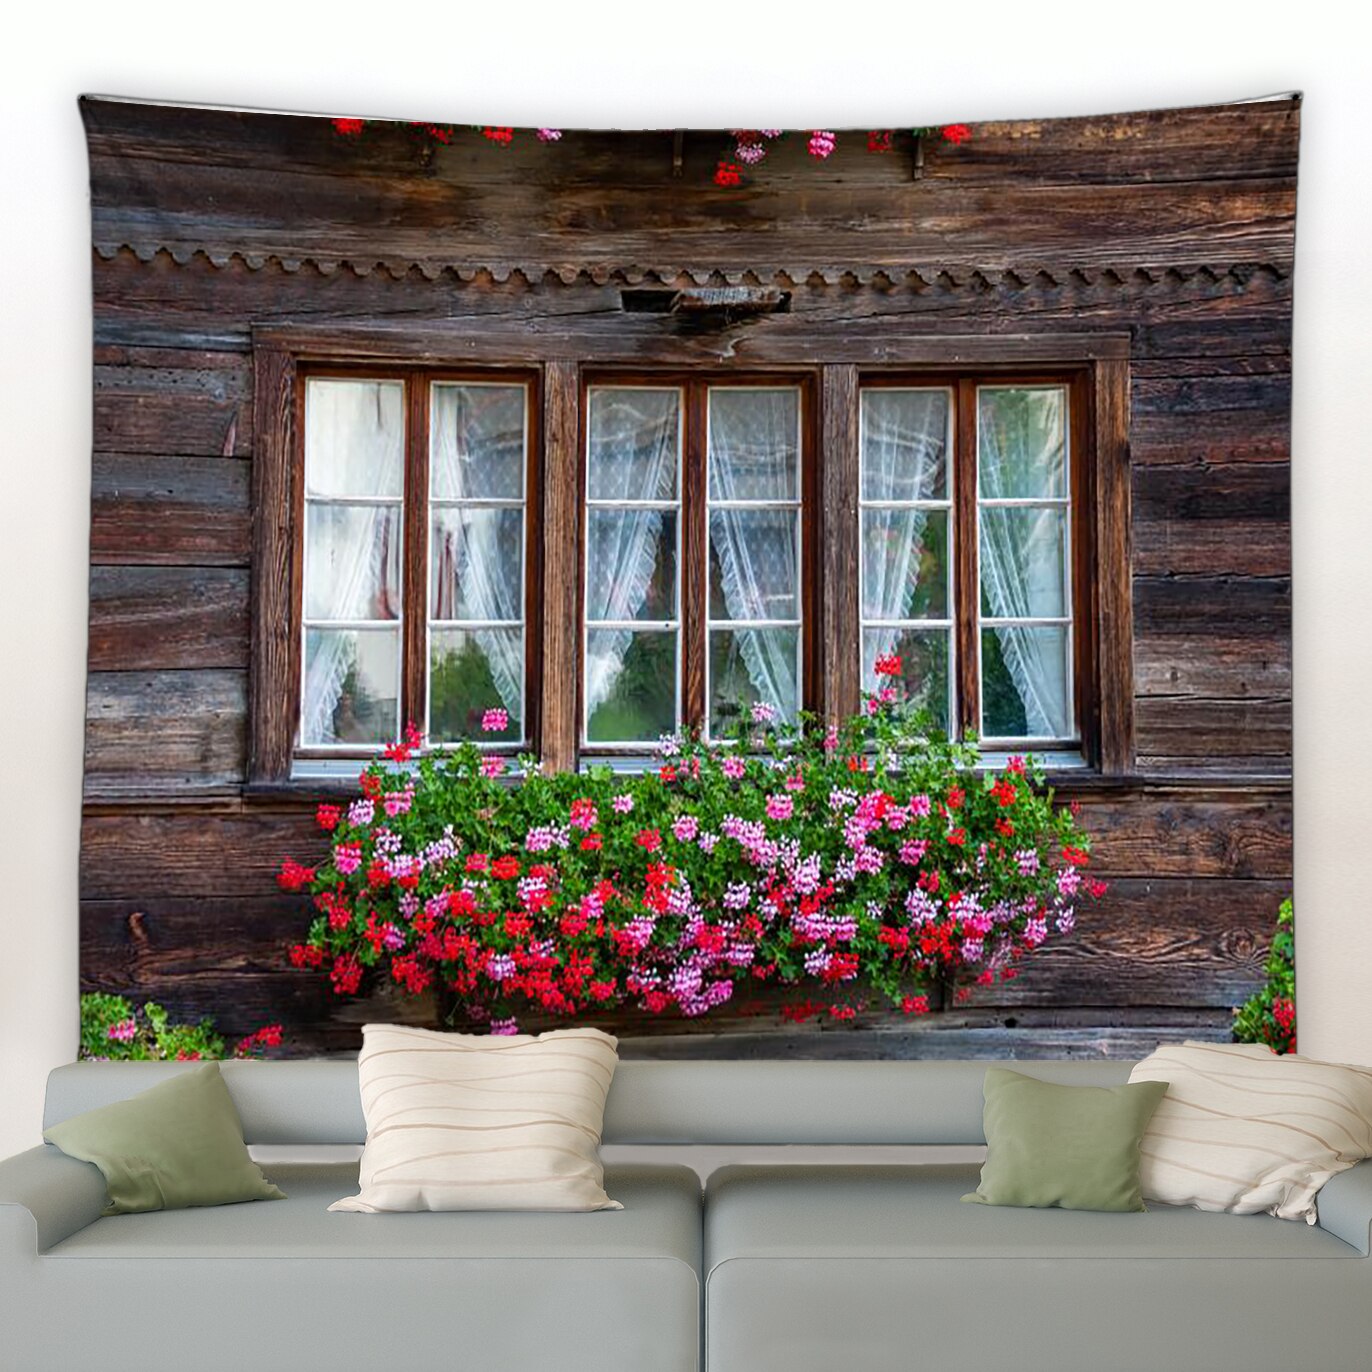 Zf hàng rào hoa màu hồng tấm thảm Cổ điển Hoa cửa sổ vòm vườn công viên